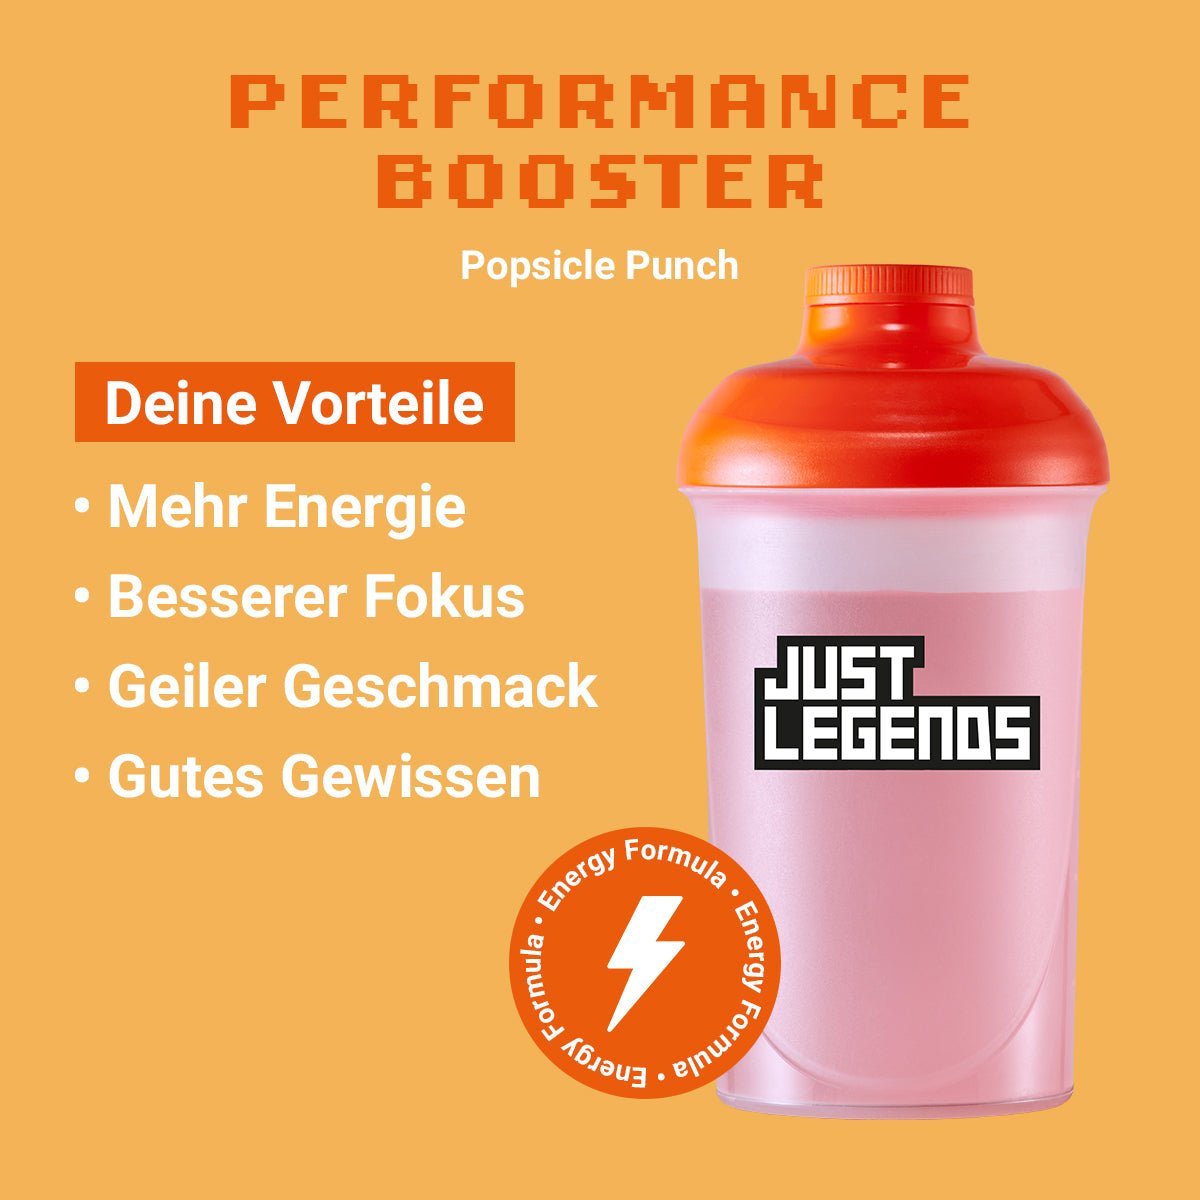 Just Legends Performance Booster Popsicle Punch | Funktionaler, veganer Performance Booster auf Pulverbasis ohne Zucker, mit wenig Kalorien, vielen Vitaminen und natürlichen Aromen.